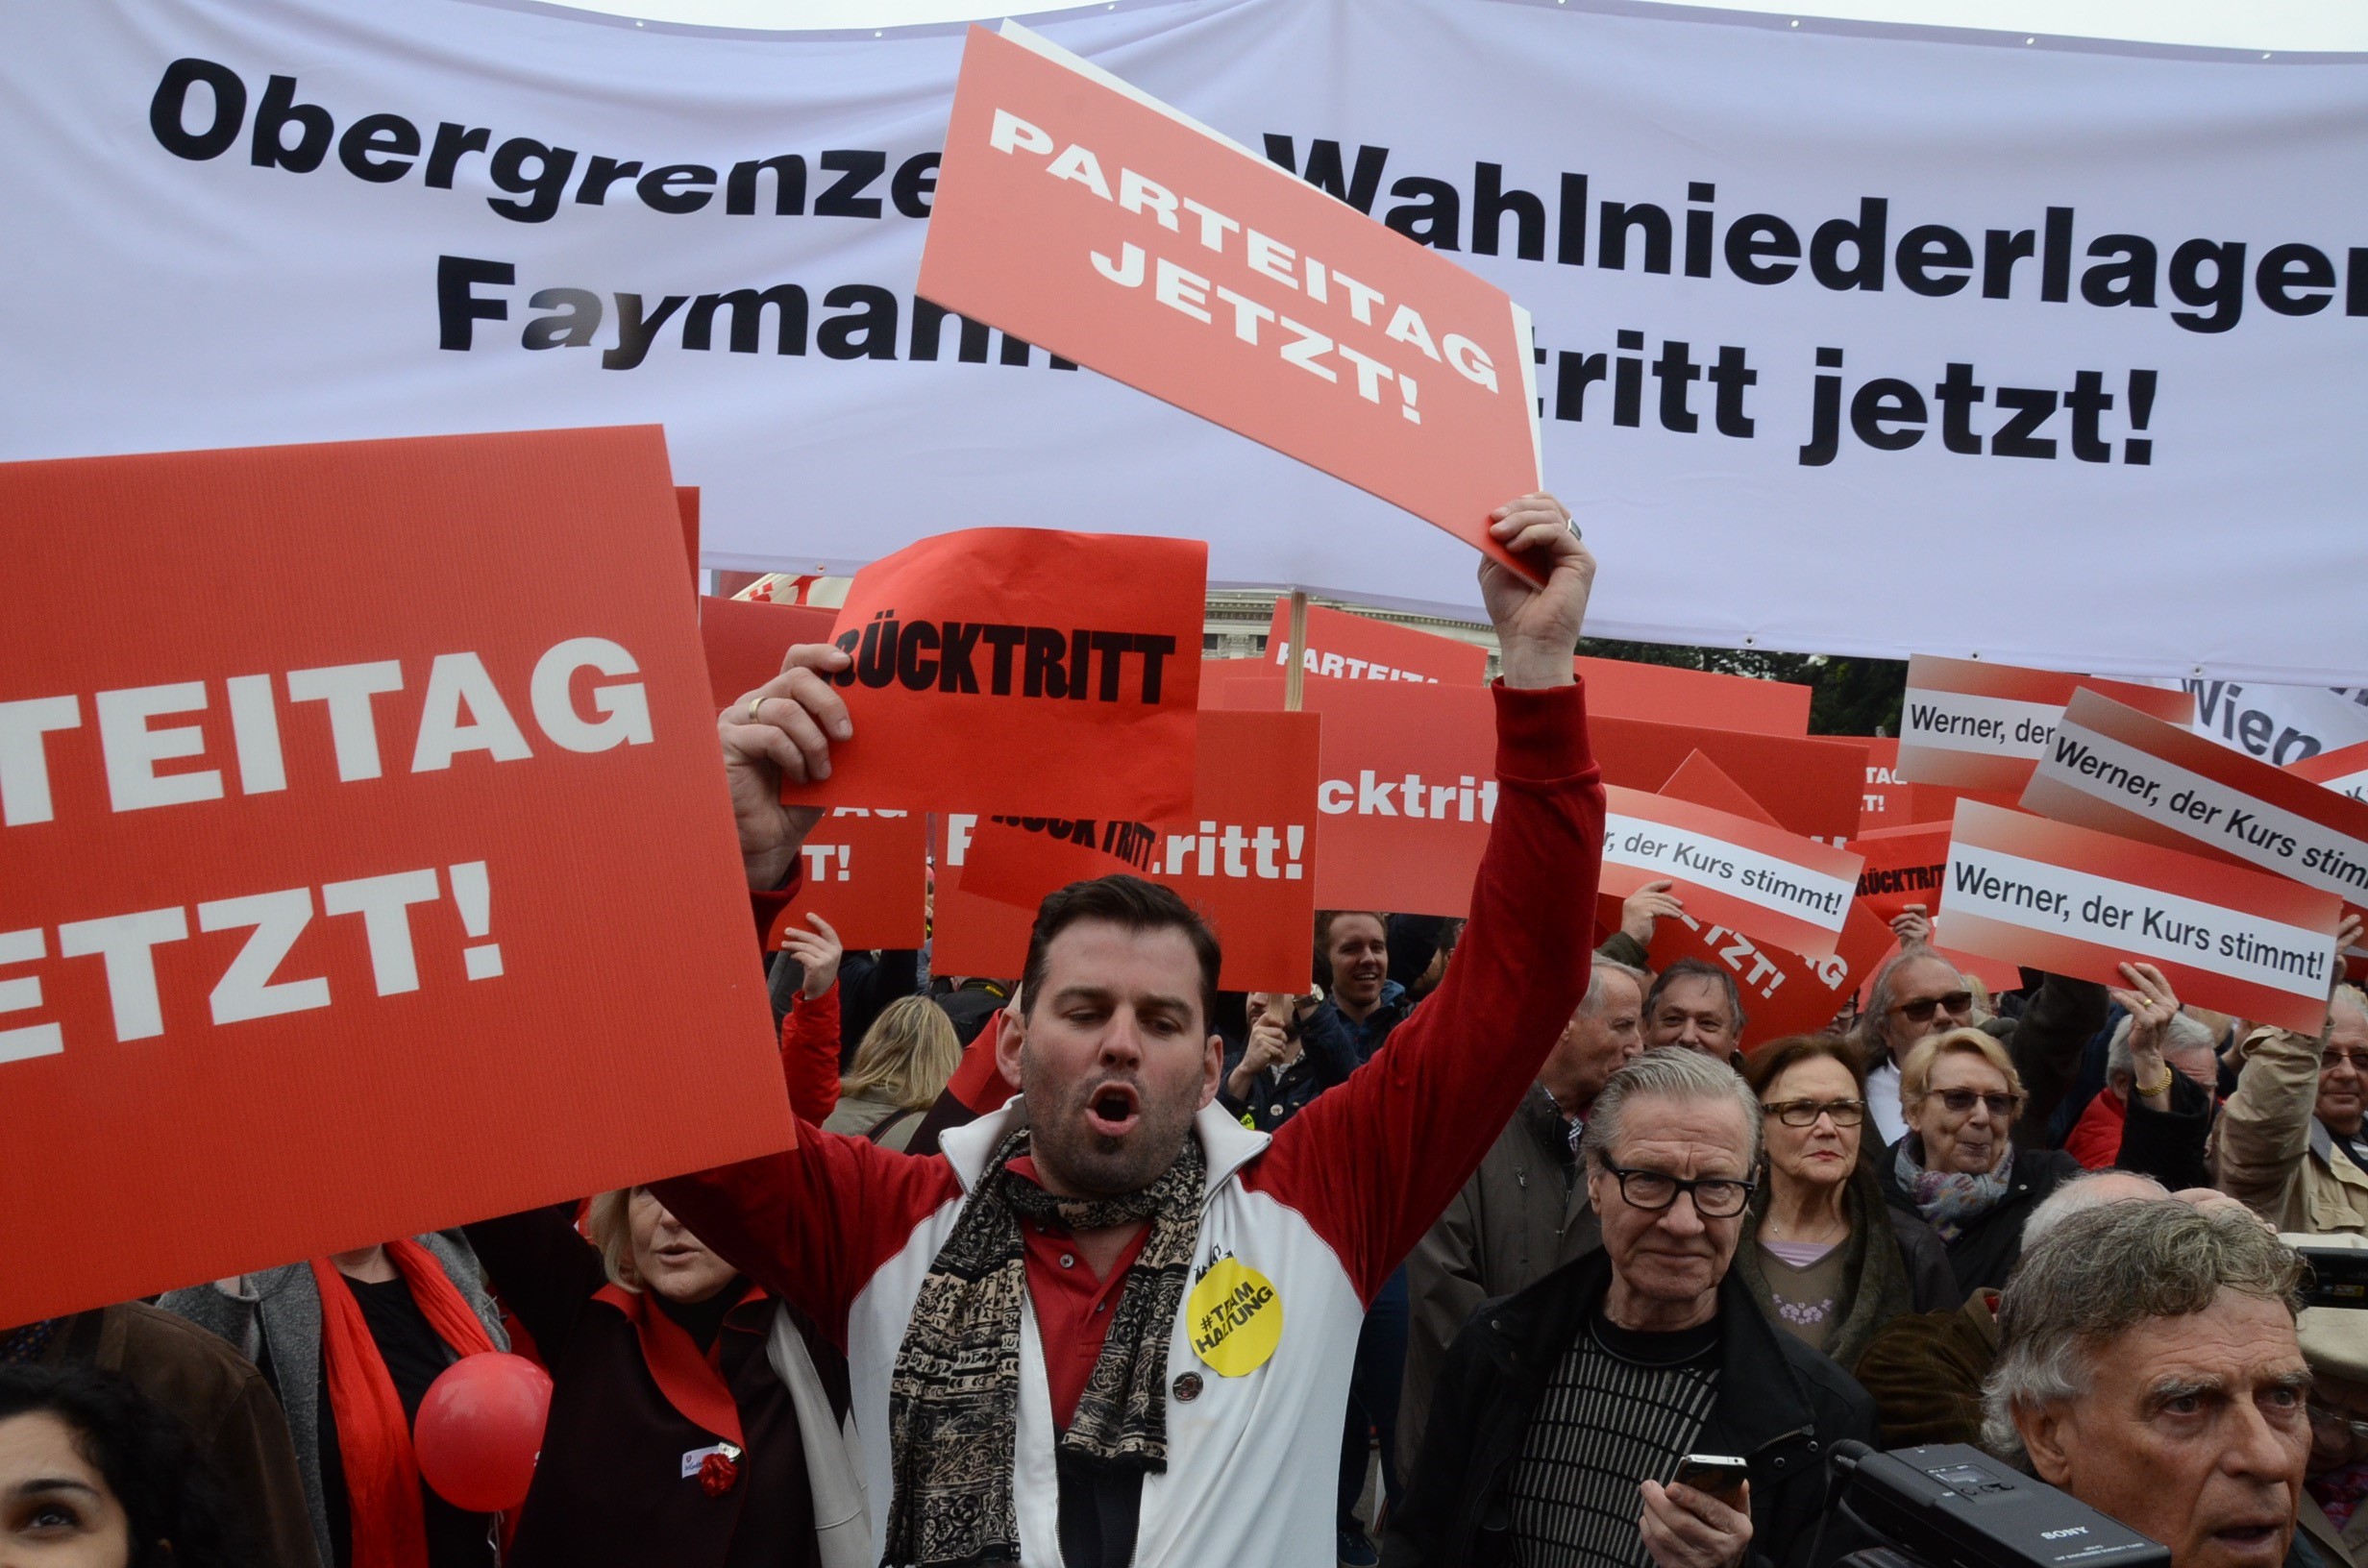 Kifütyülték az osztrák kancellárt saját pártjának majálisán